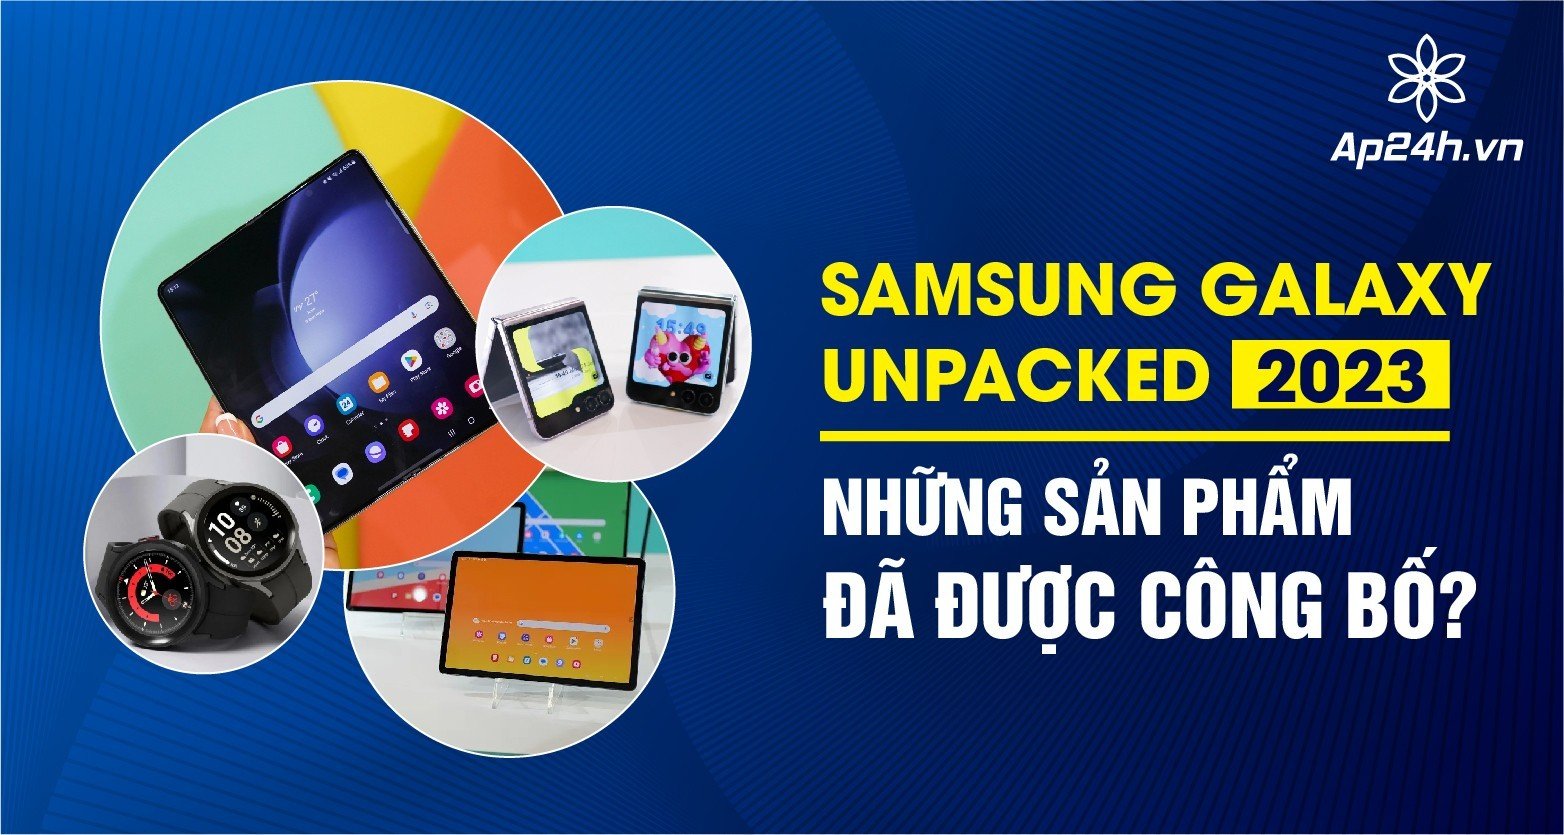 Samsung Galaxy Unpacked 2023 công bố các sản phẩm 